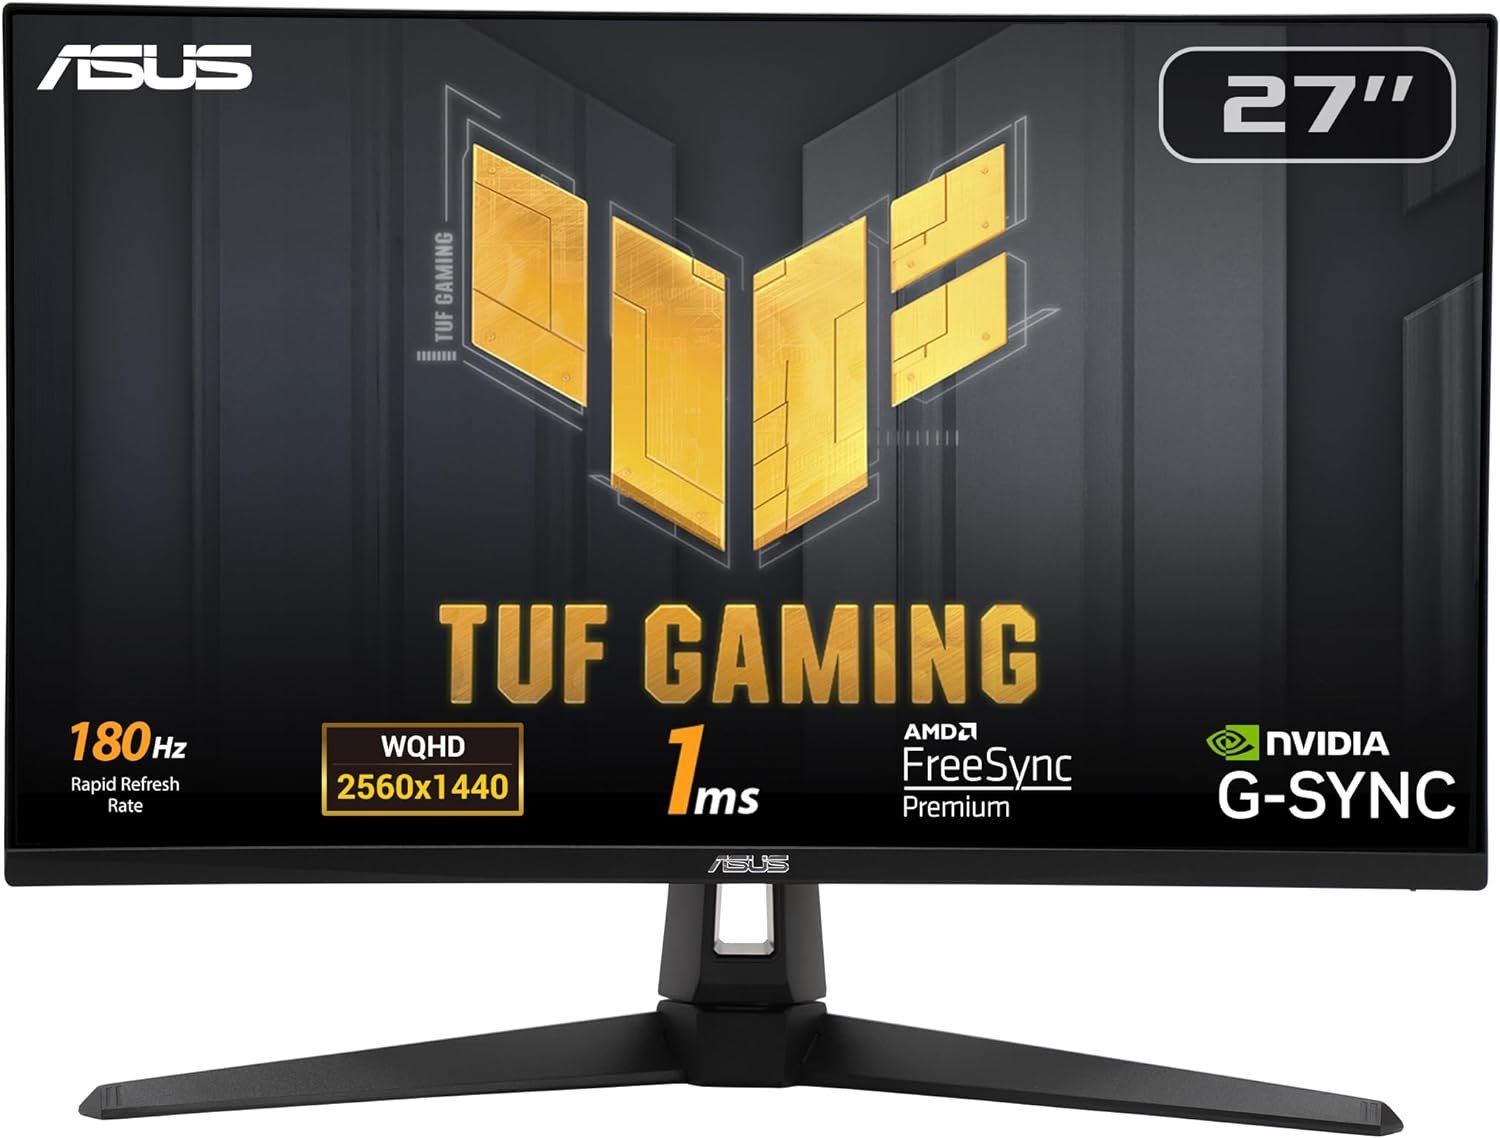 ASUAA ASUS TUF Gaming 27'' 1440P HDR Monitor